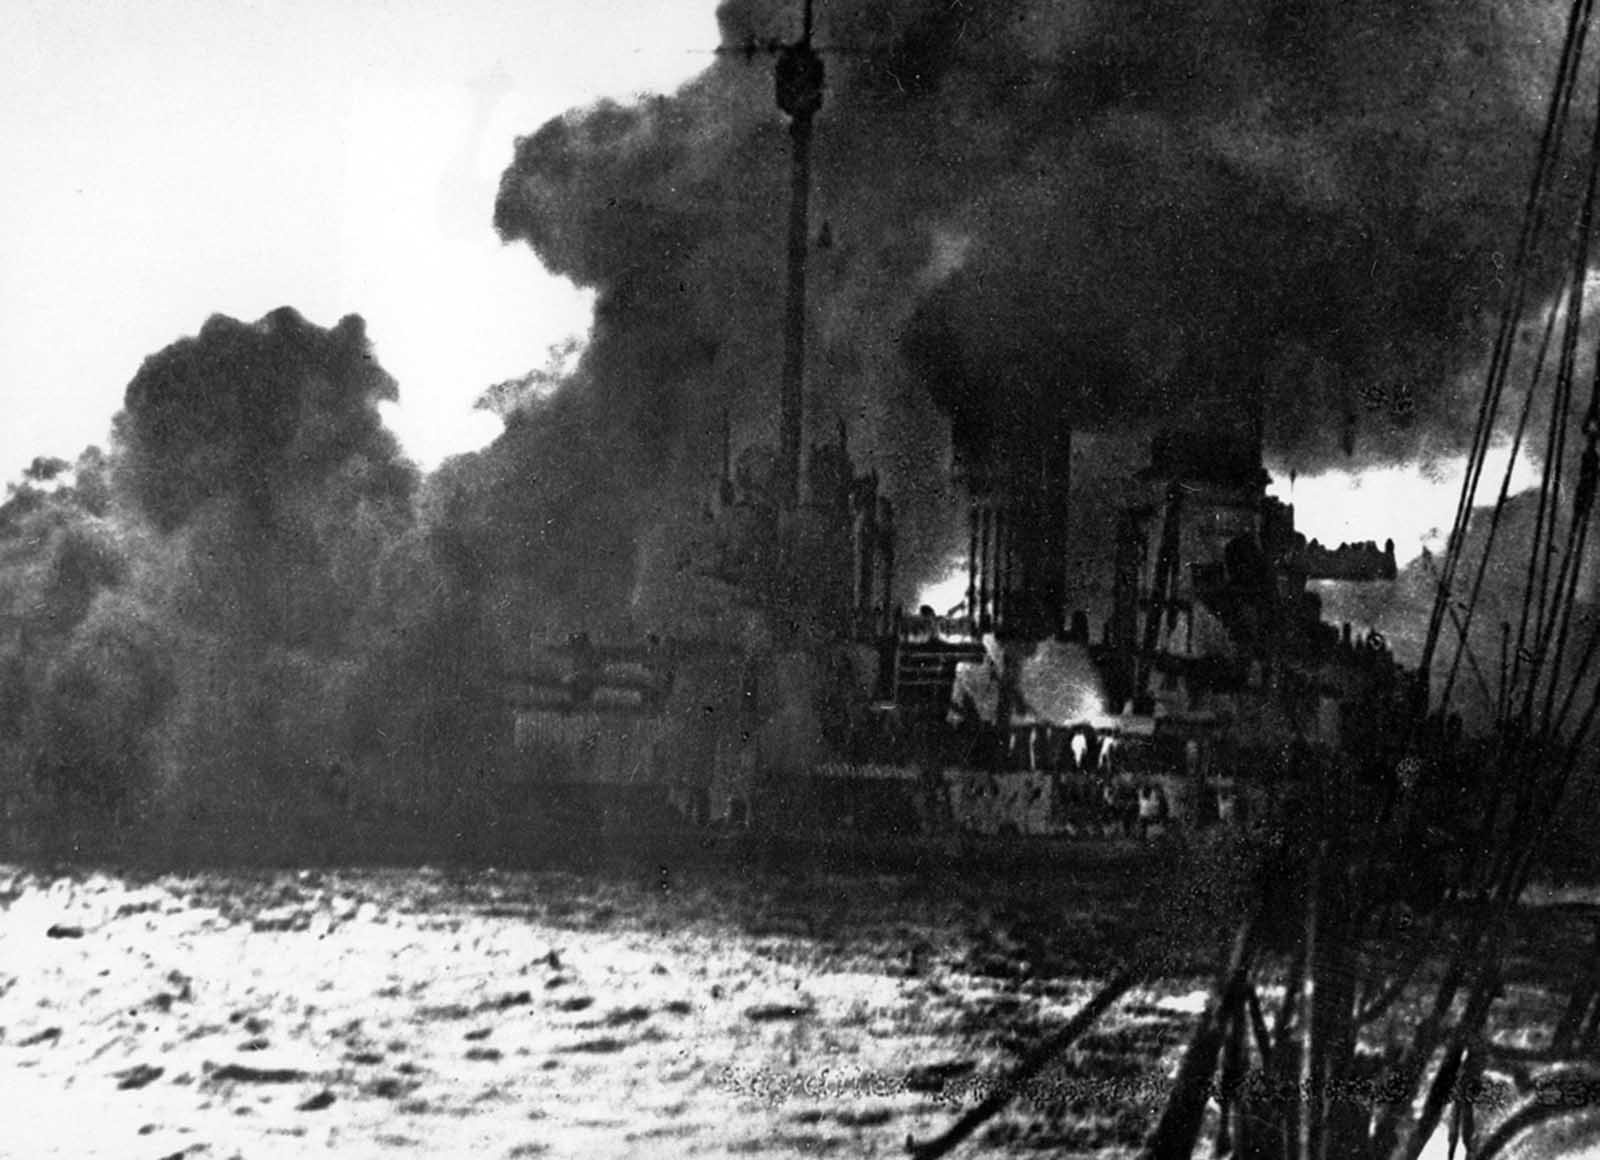 La Guerre Navale de la première Guerre Mondiale, 1914-1918